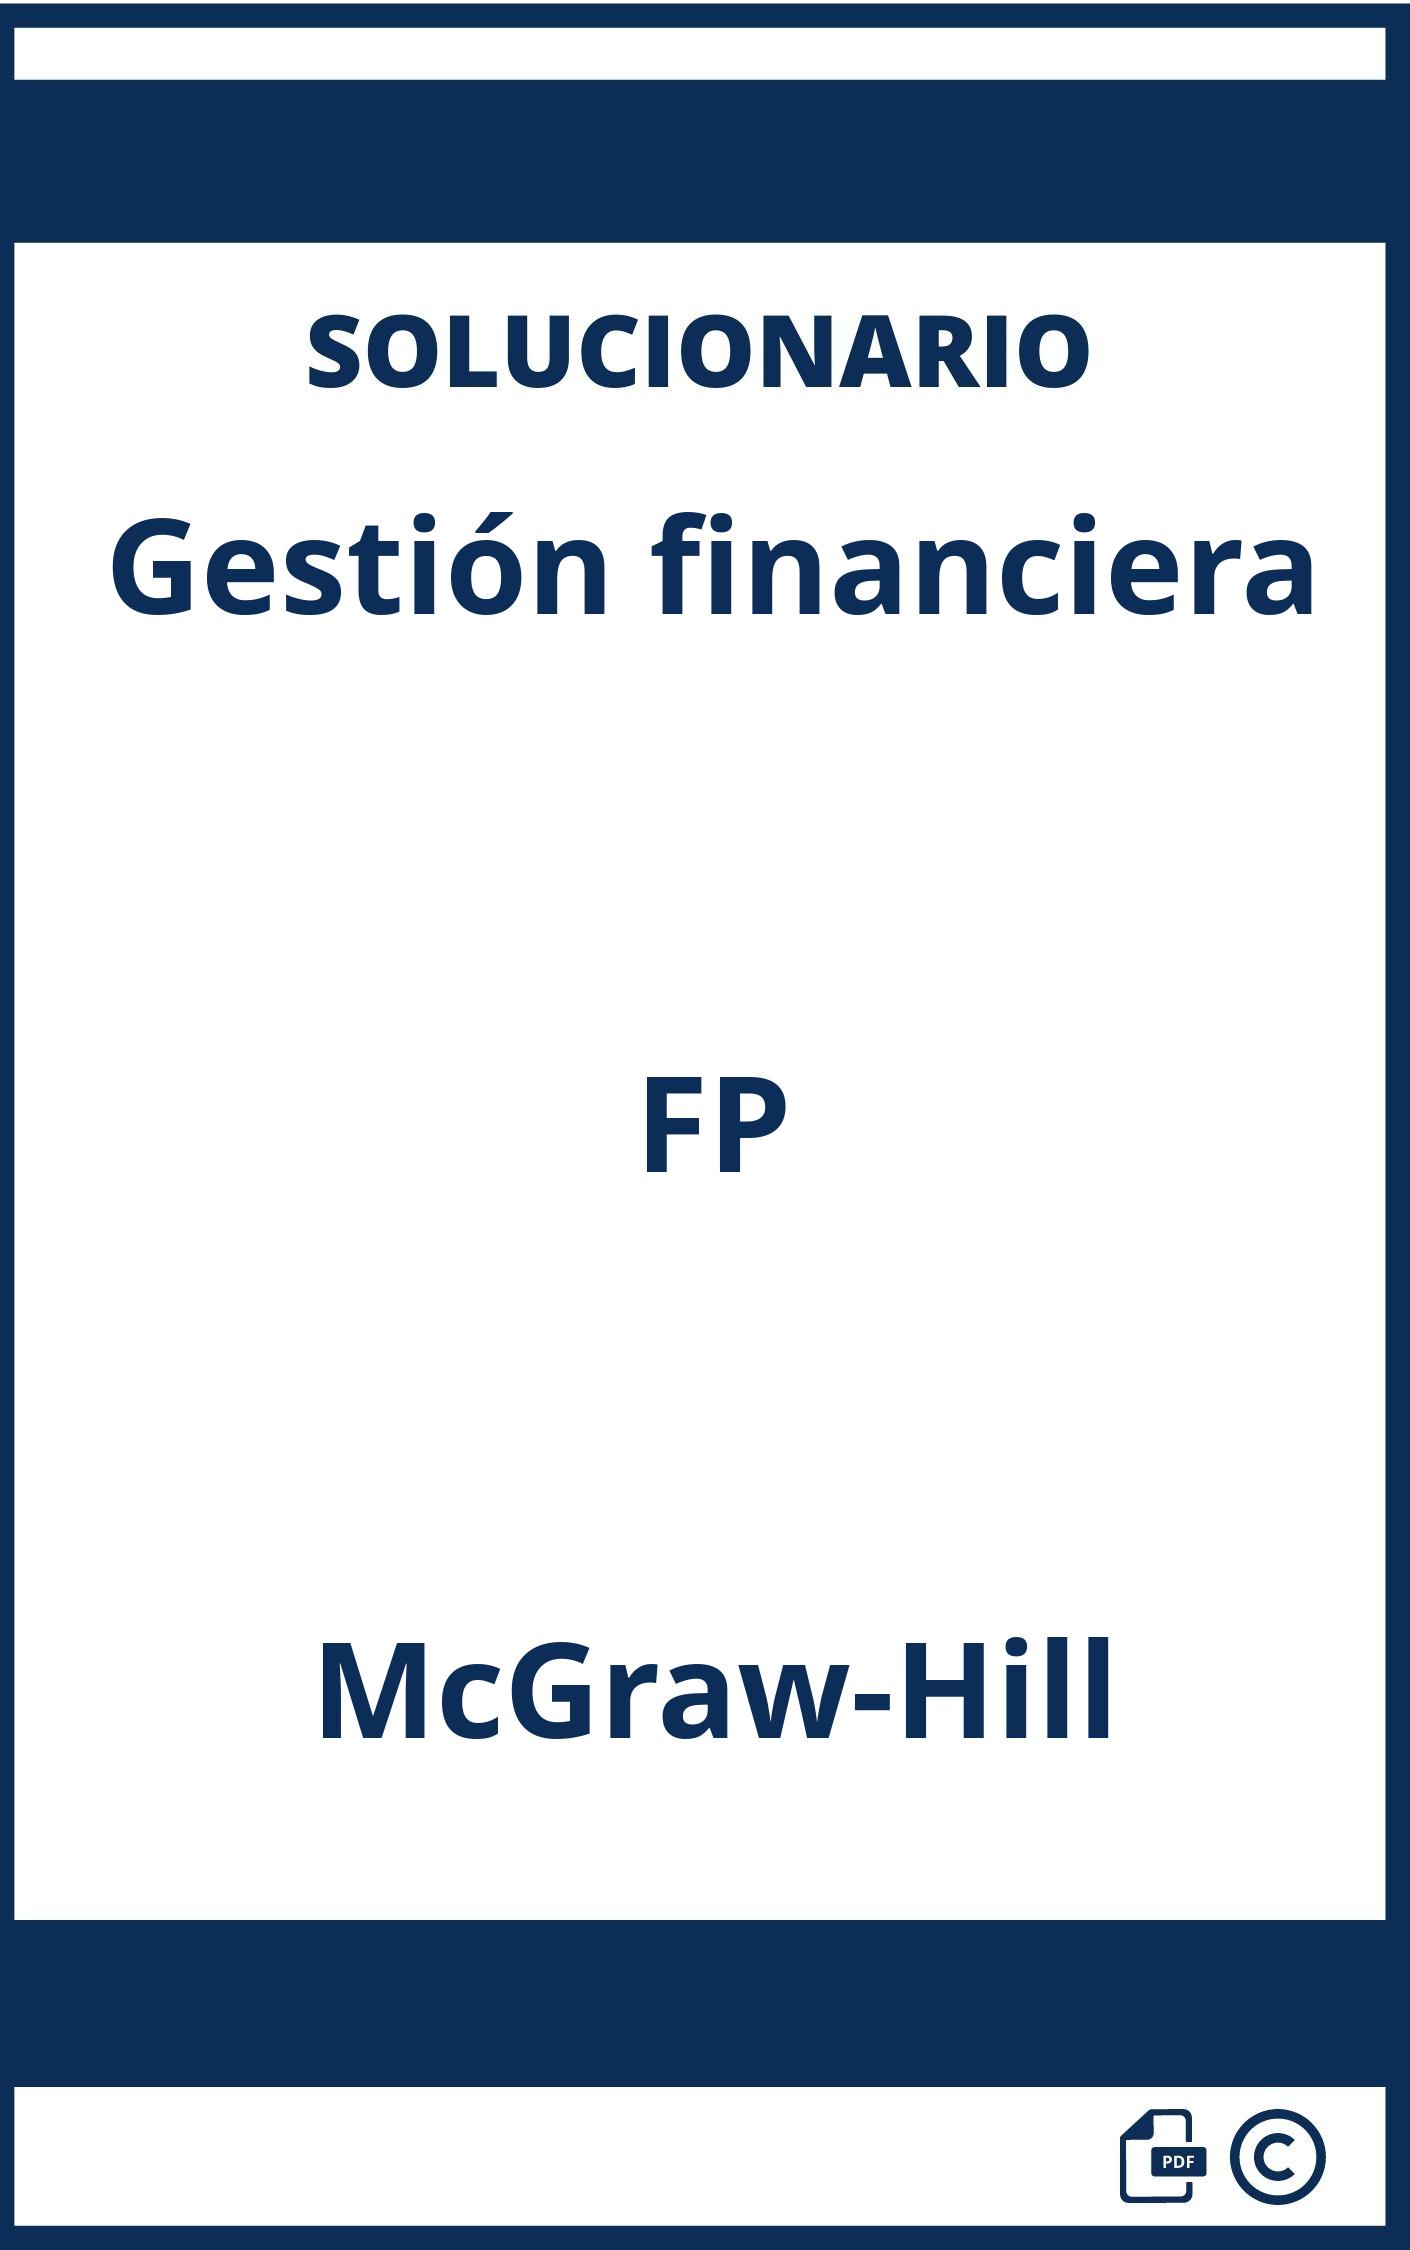 Solucionario Gestión financiera FP McGraw-Hill